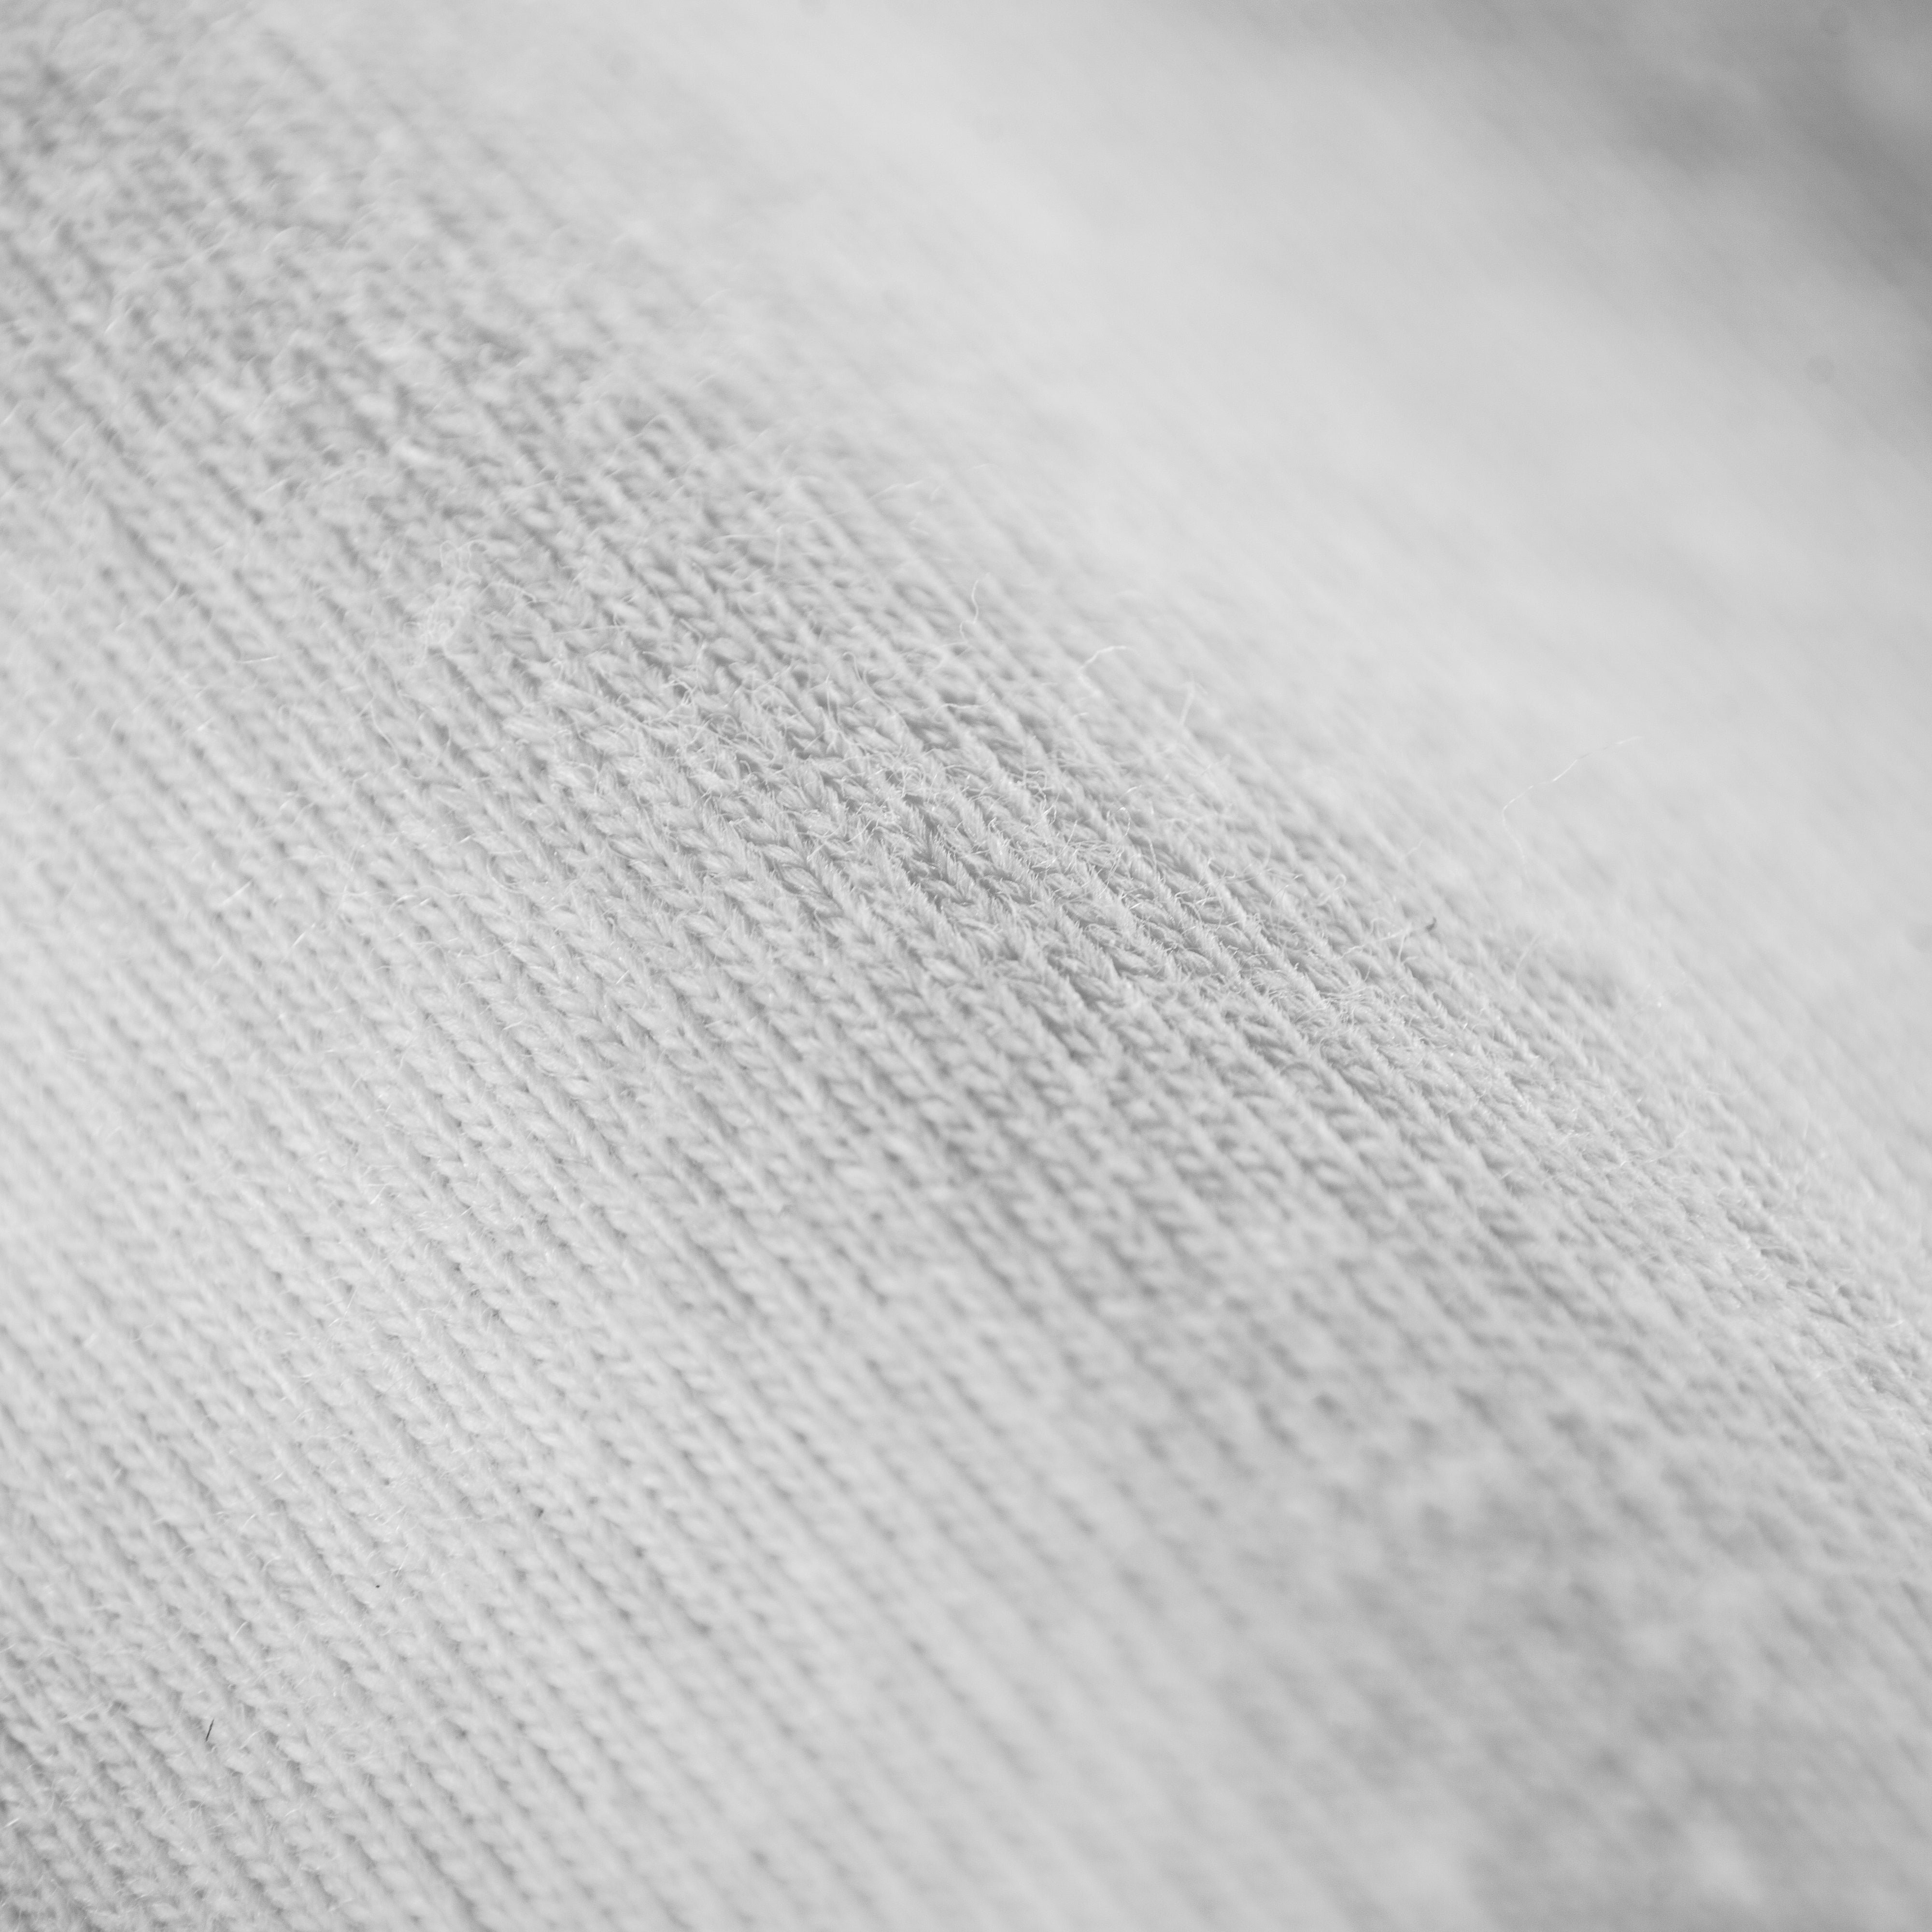 Kurz geschnitten – Übergroßes, leichtes T-Shirt – Weiß